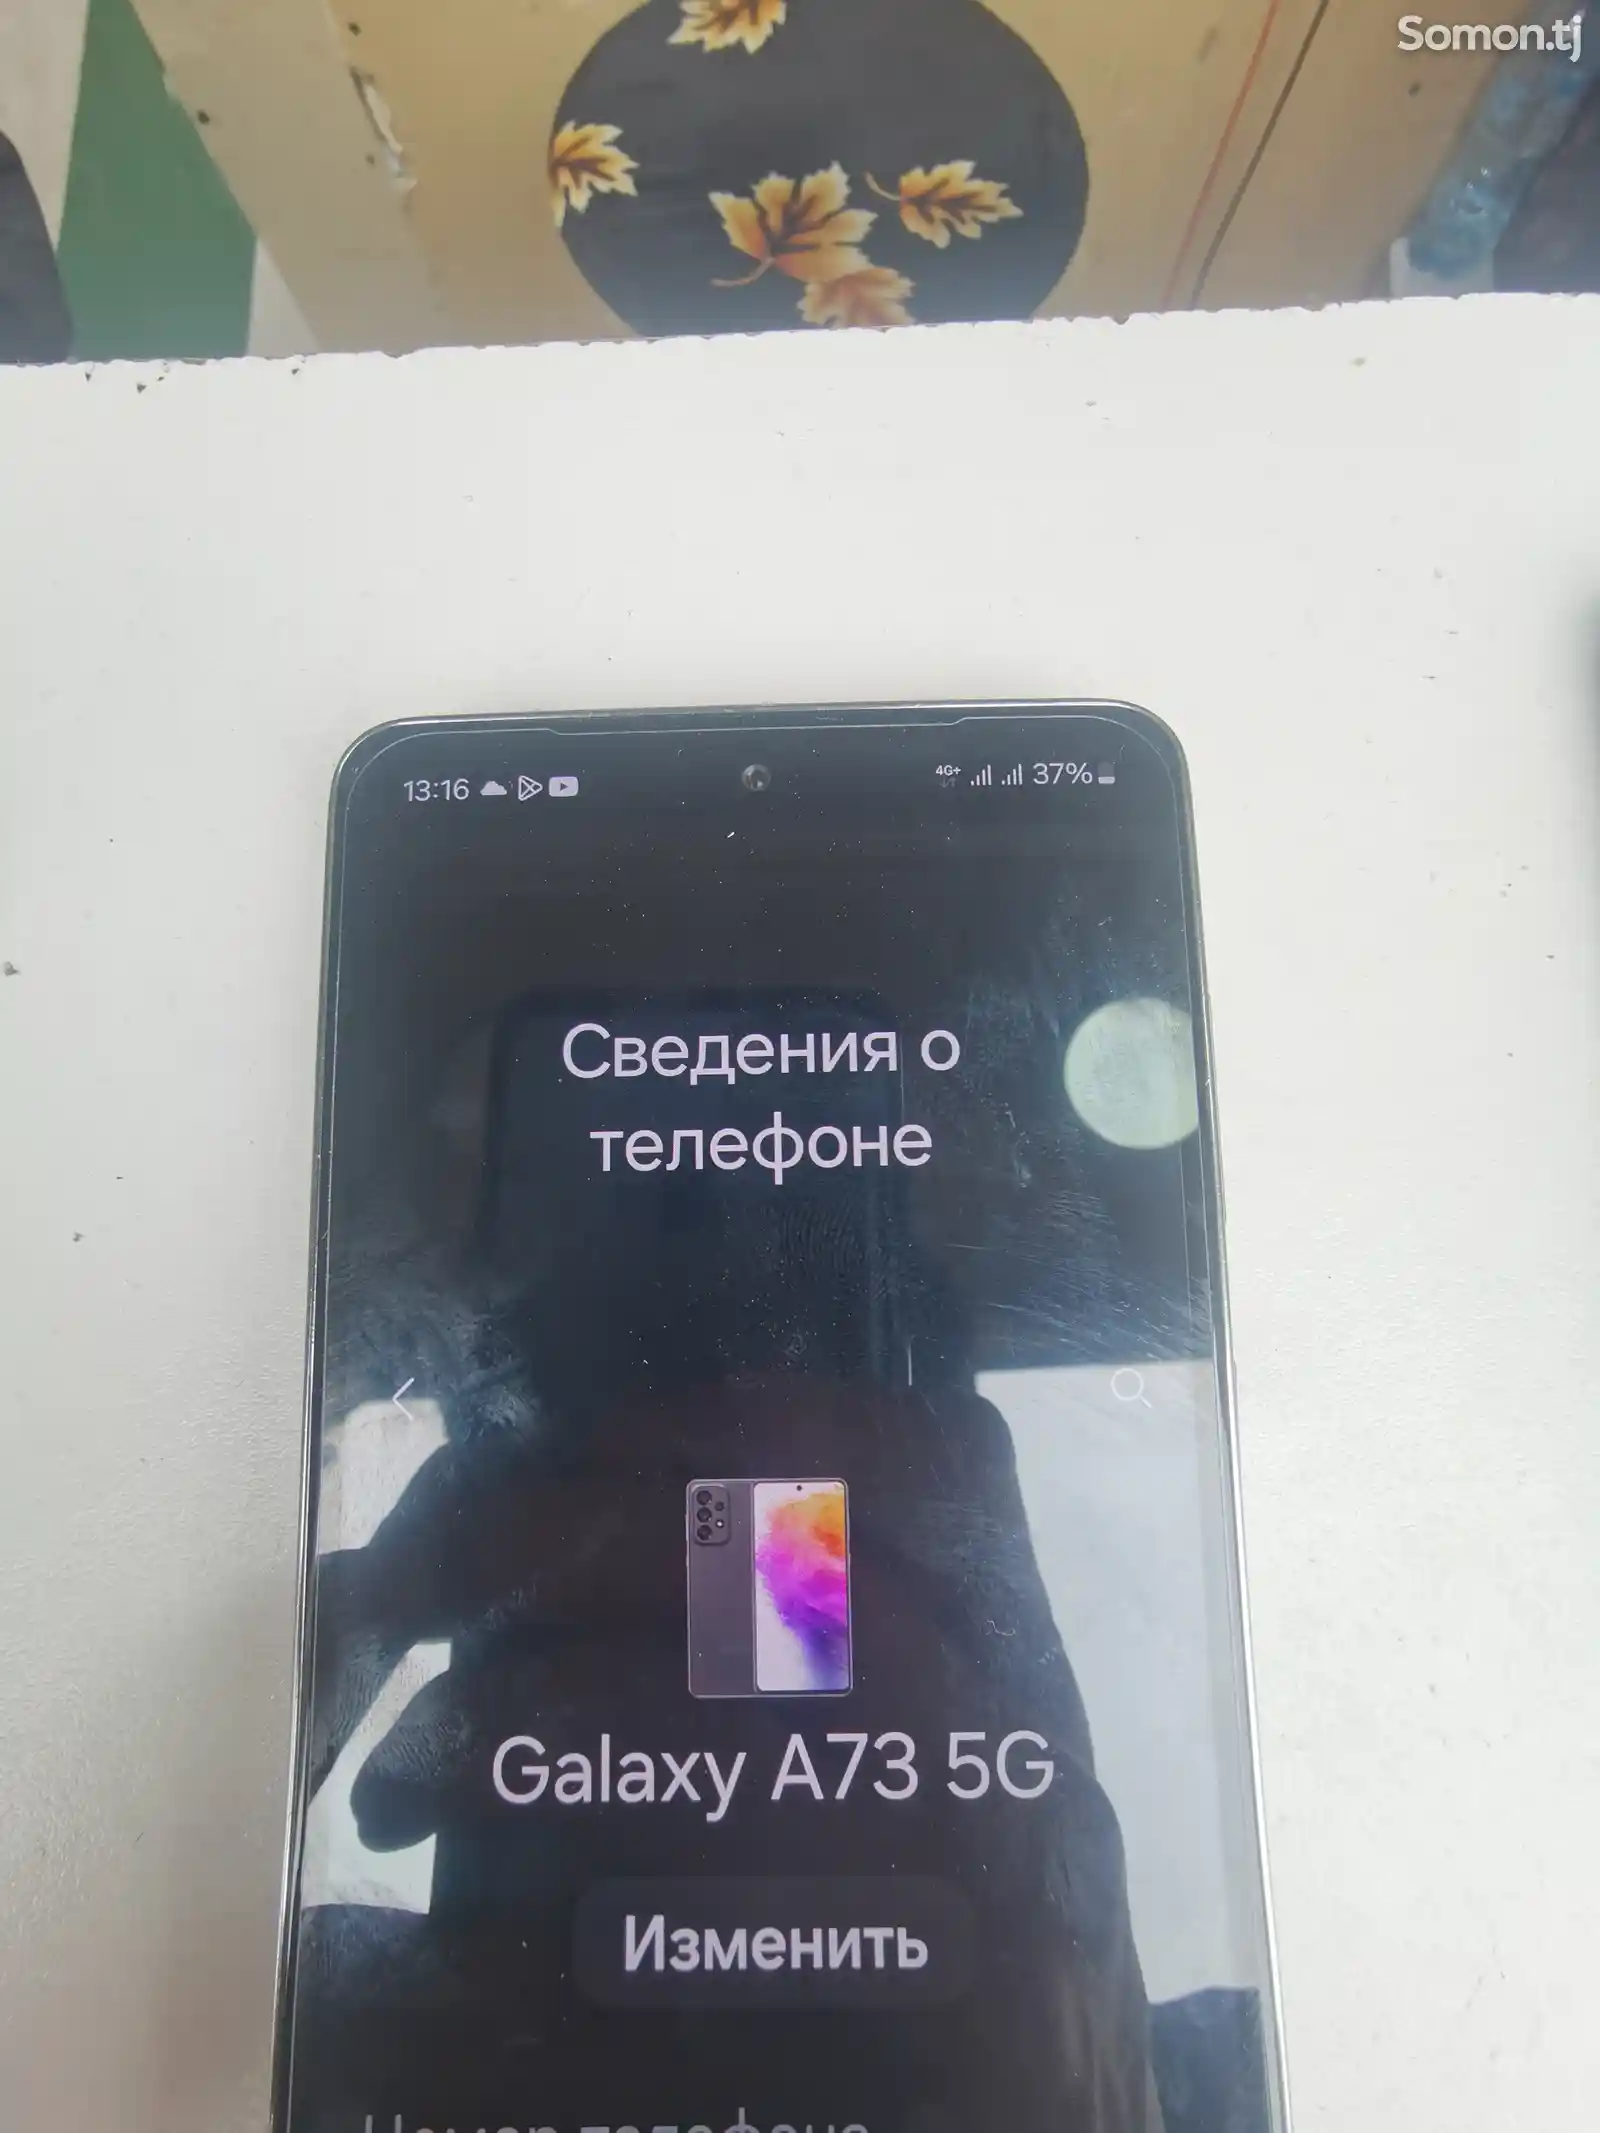 Samsung Galaxy A73-3